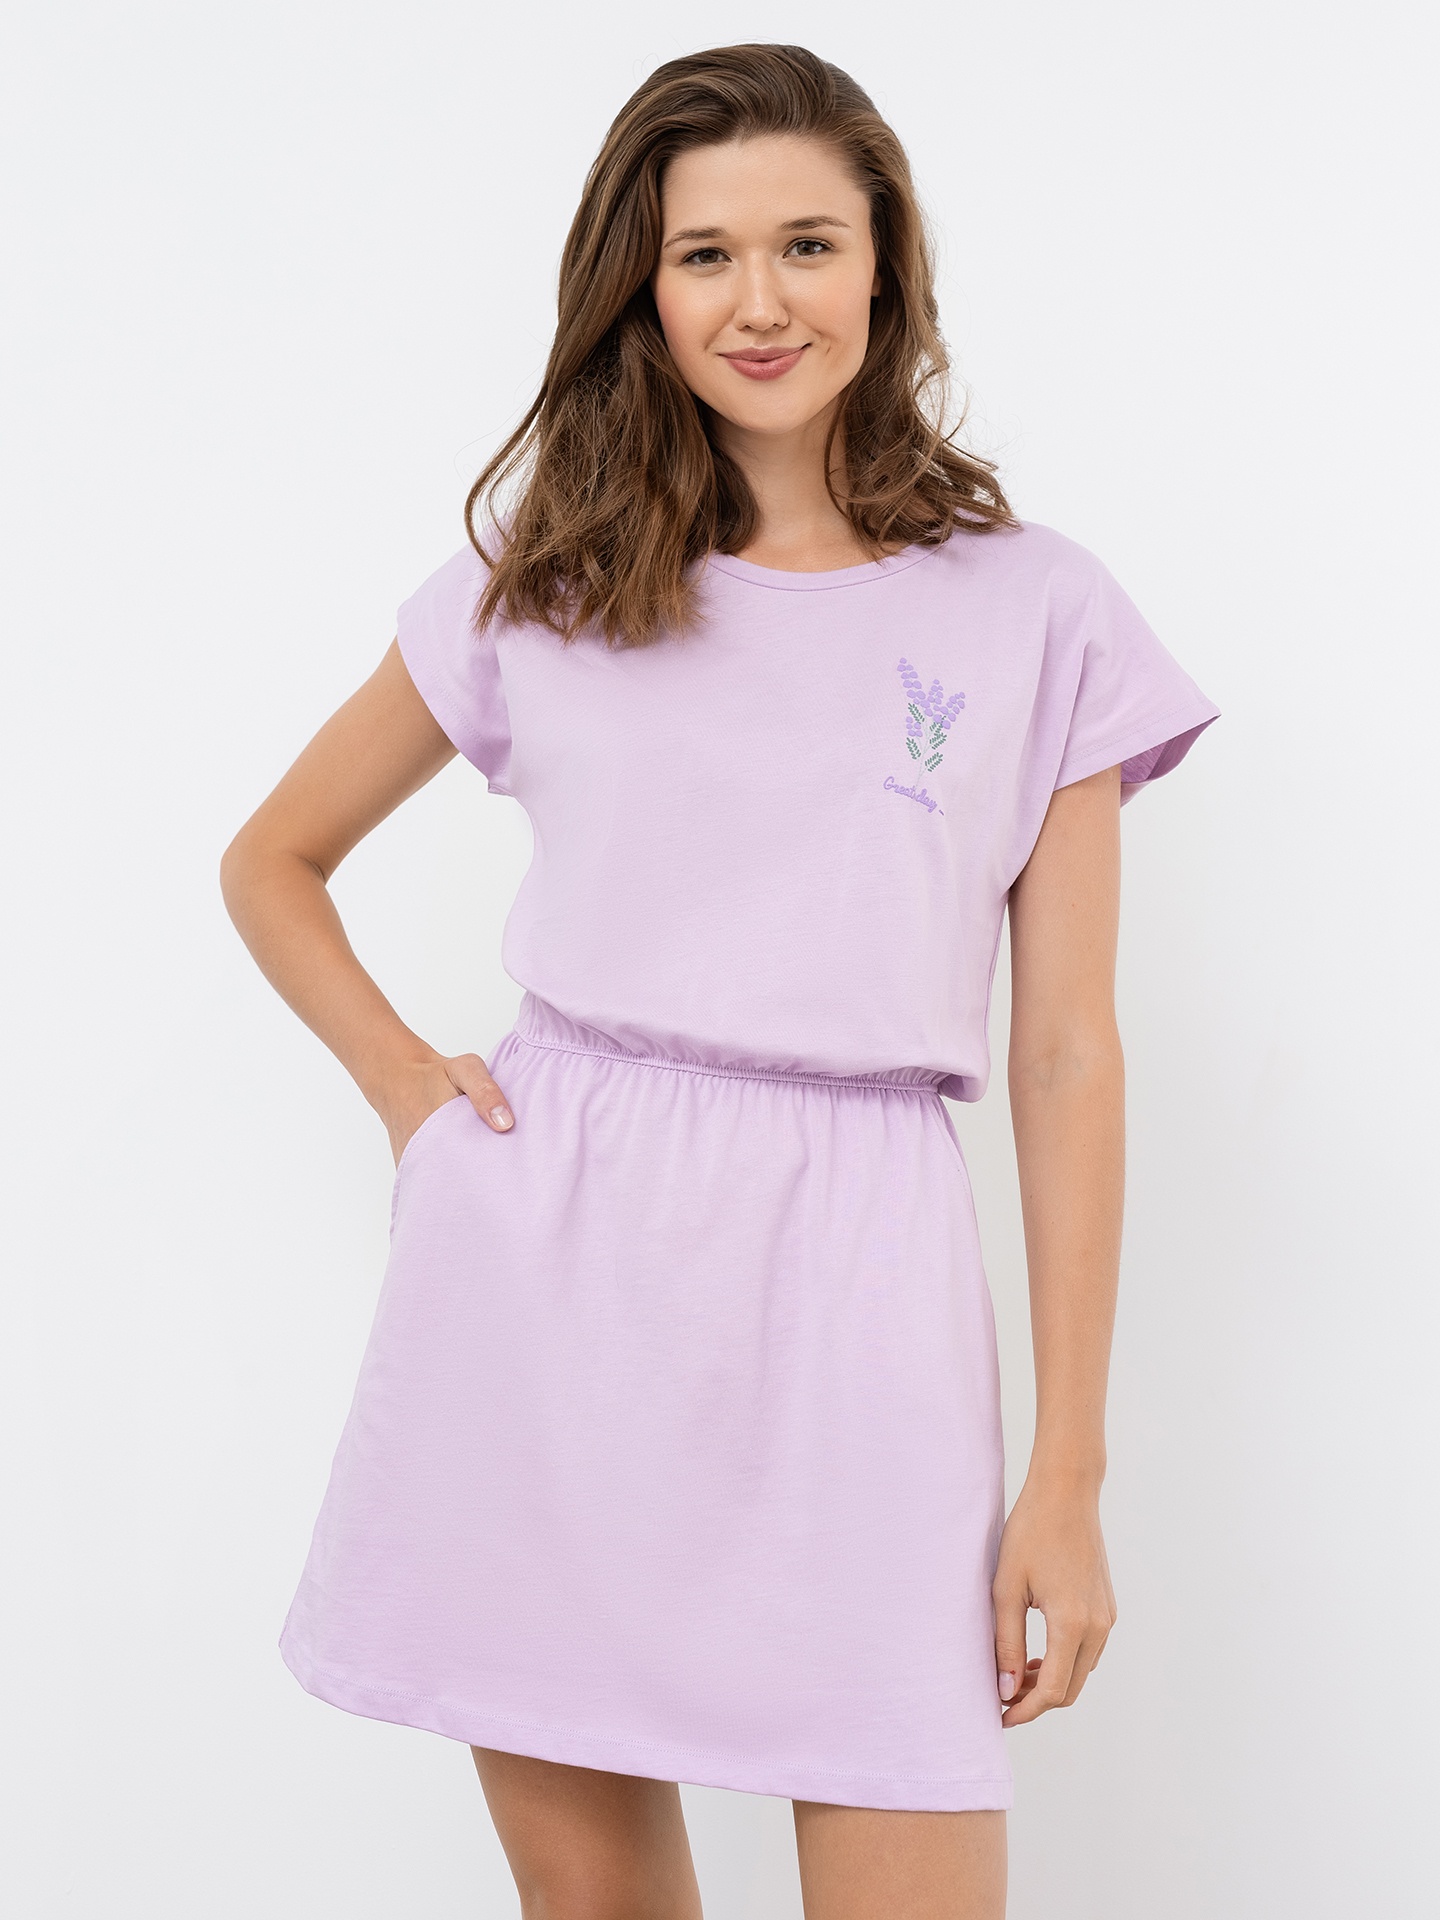 Хлопковое домашнее платье лавандового цвета с миниатюрным принтом